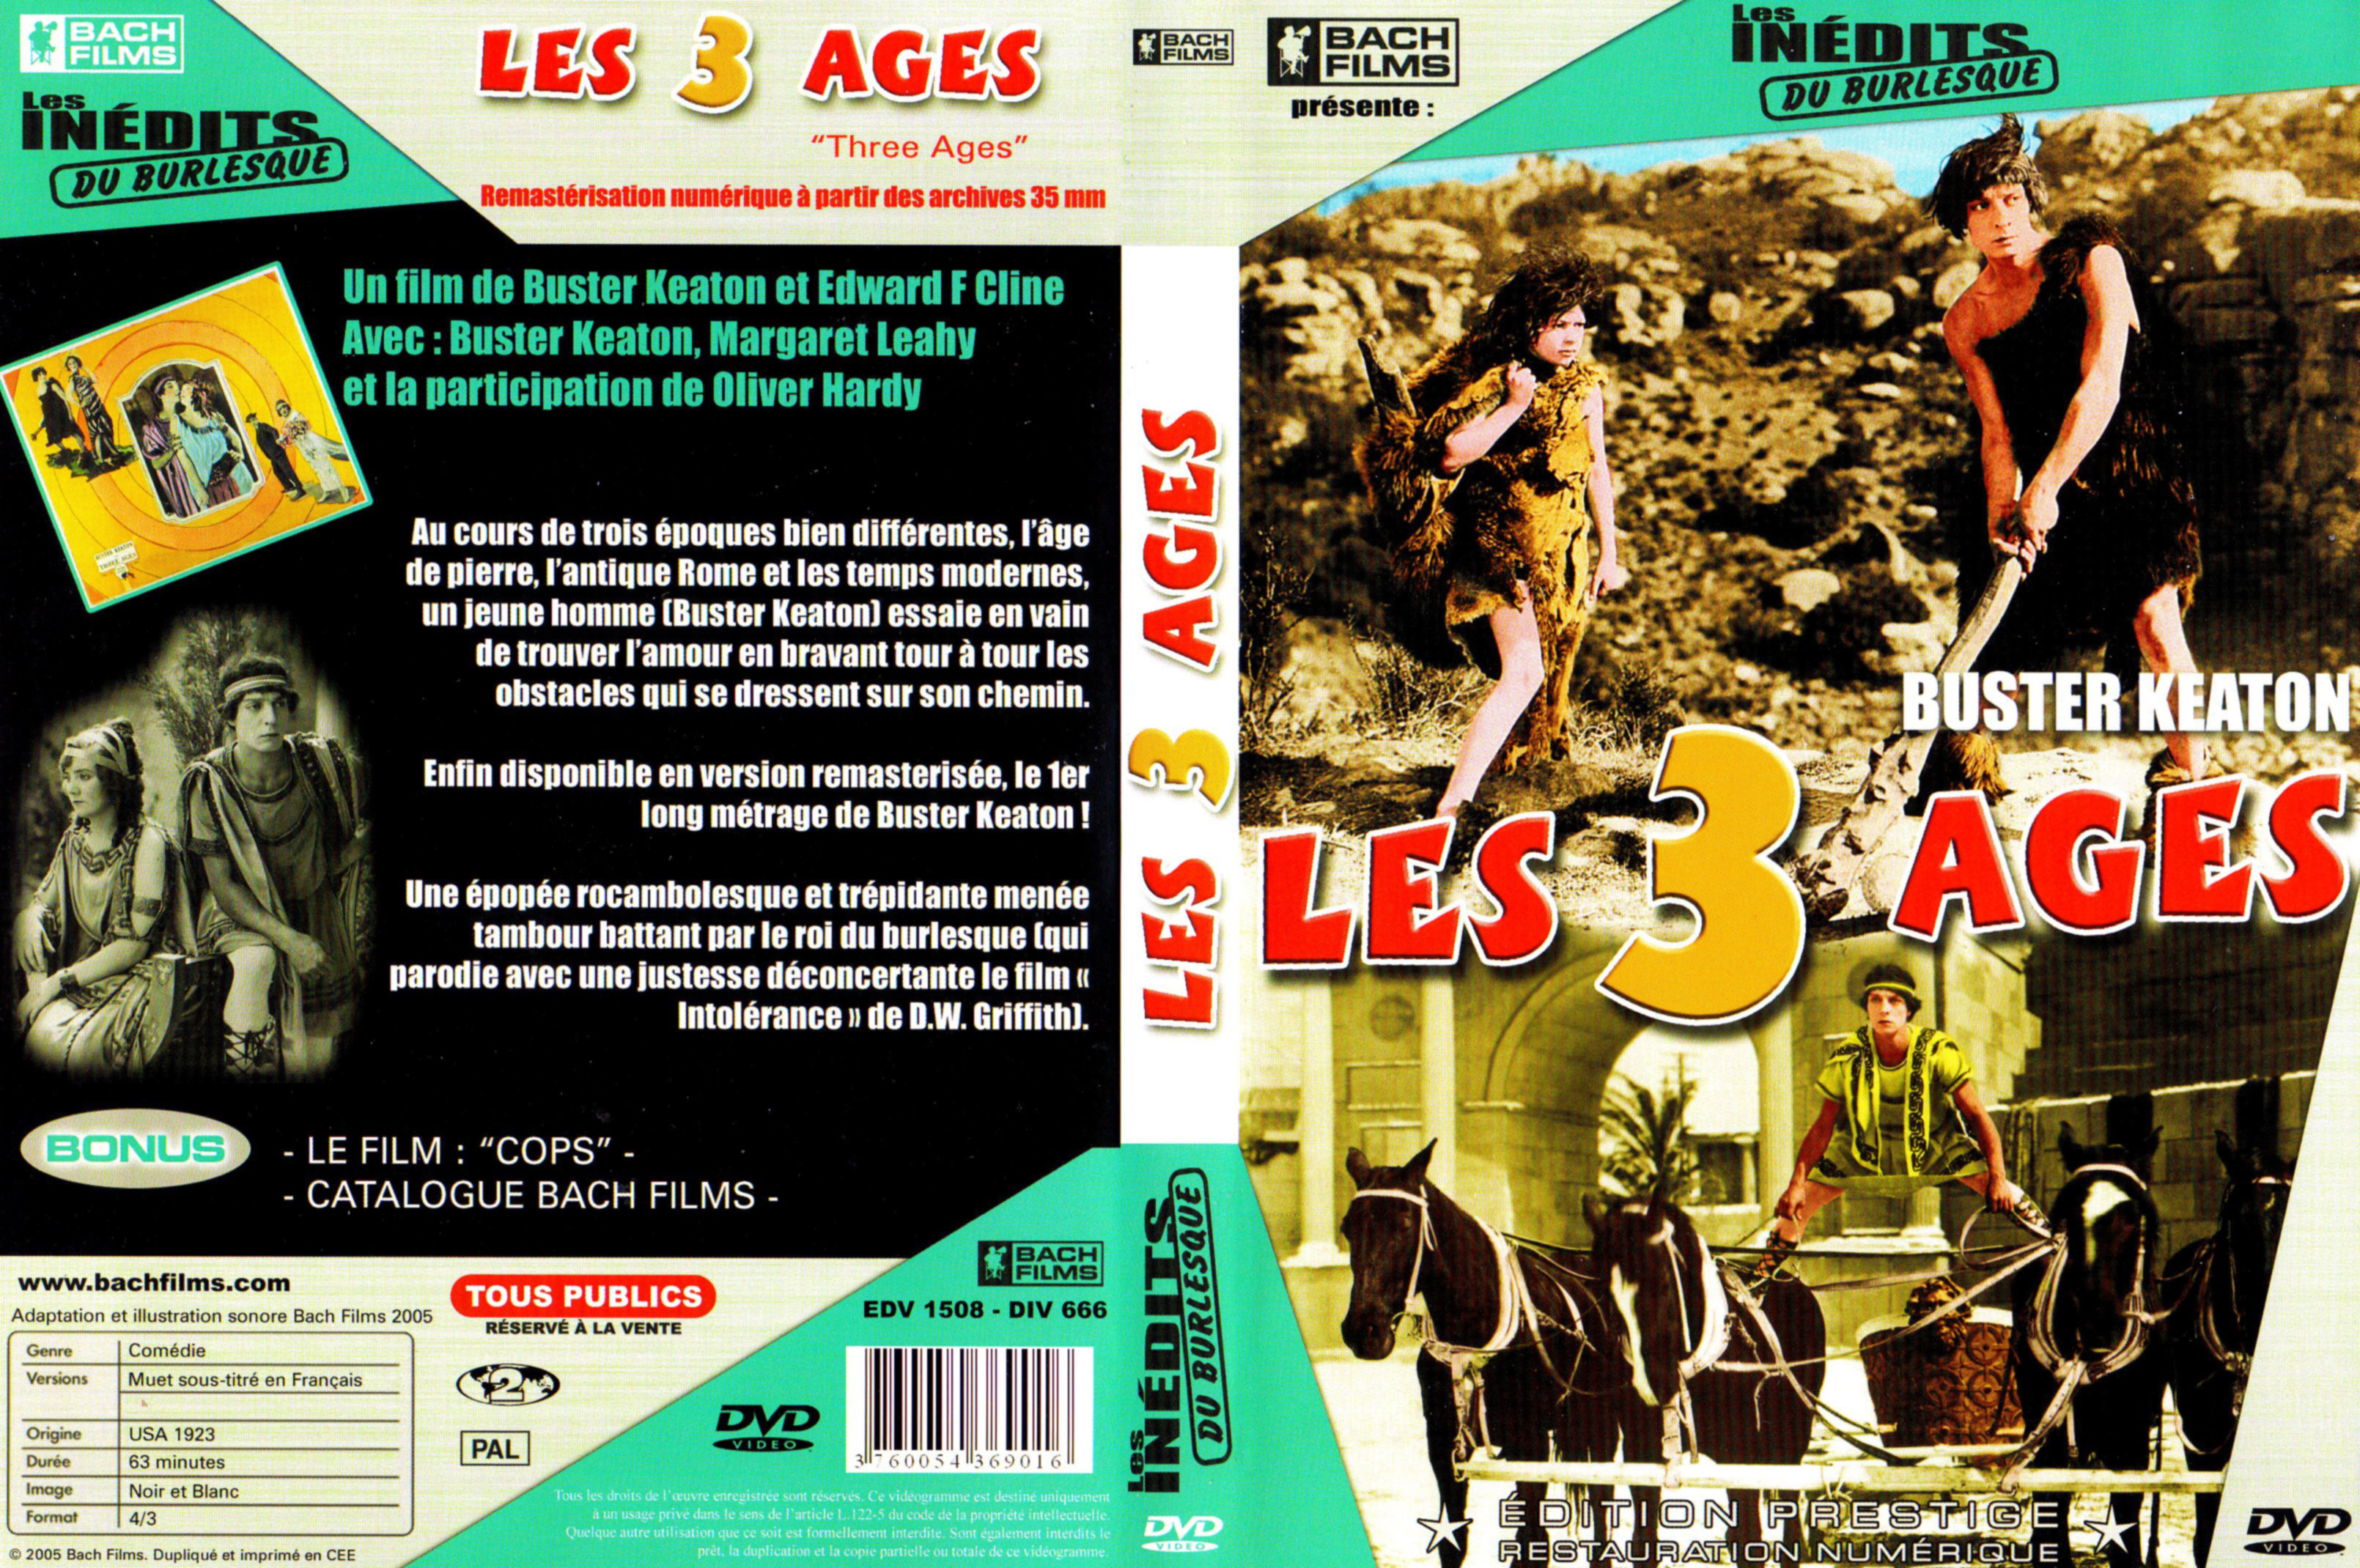 Jaquette DVD Les 3 ages